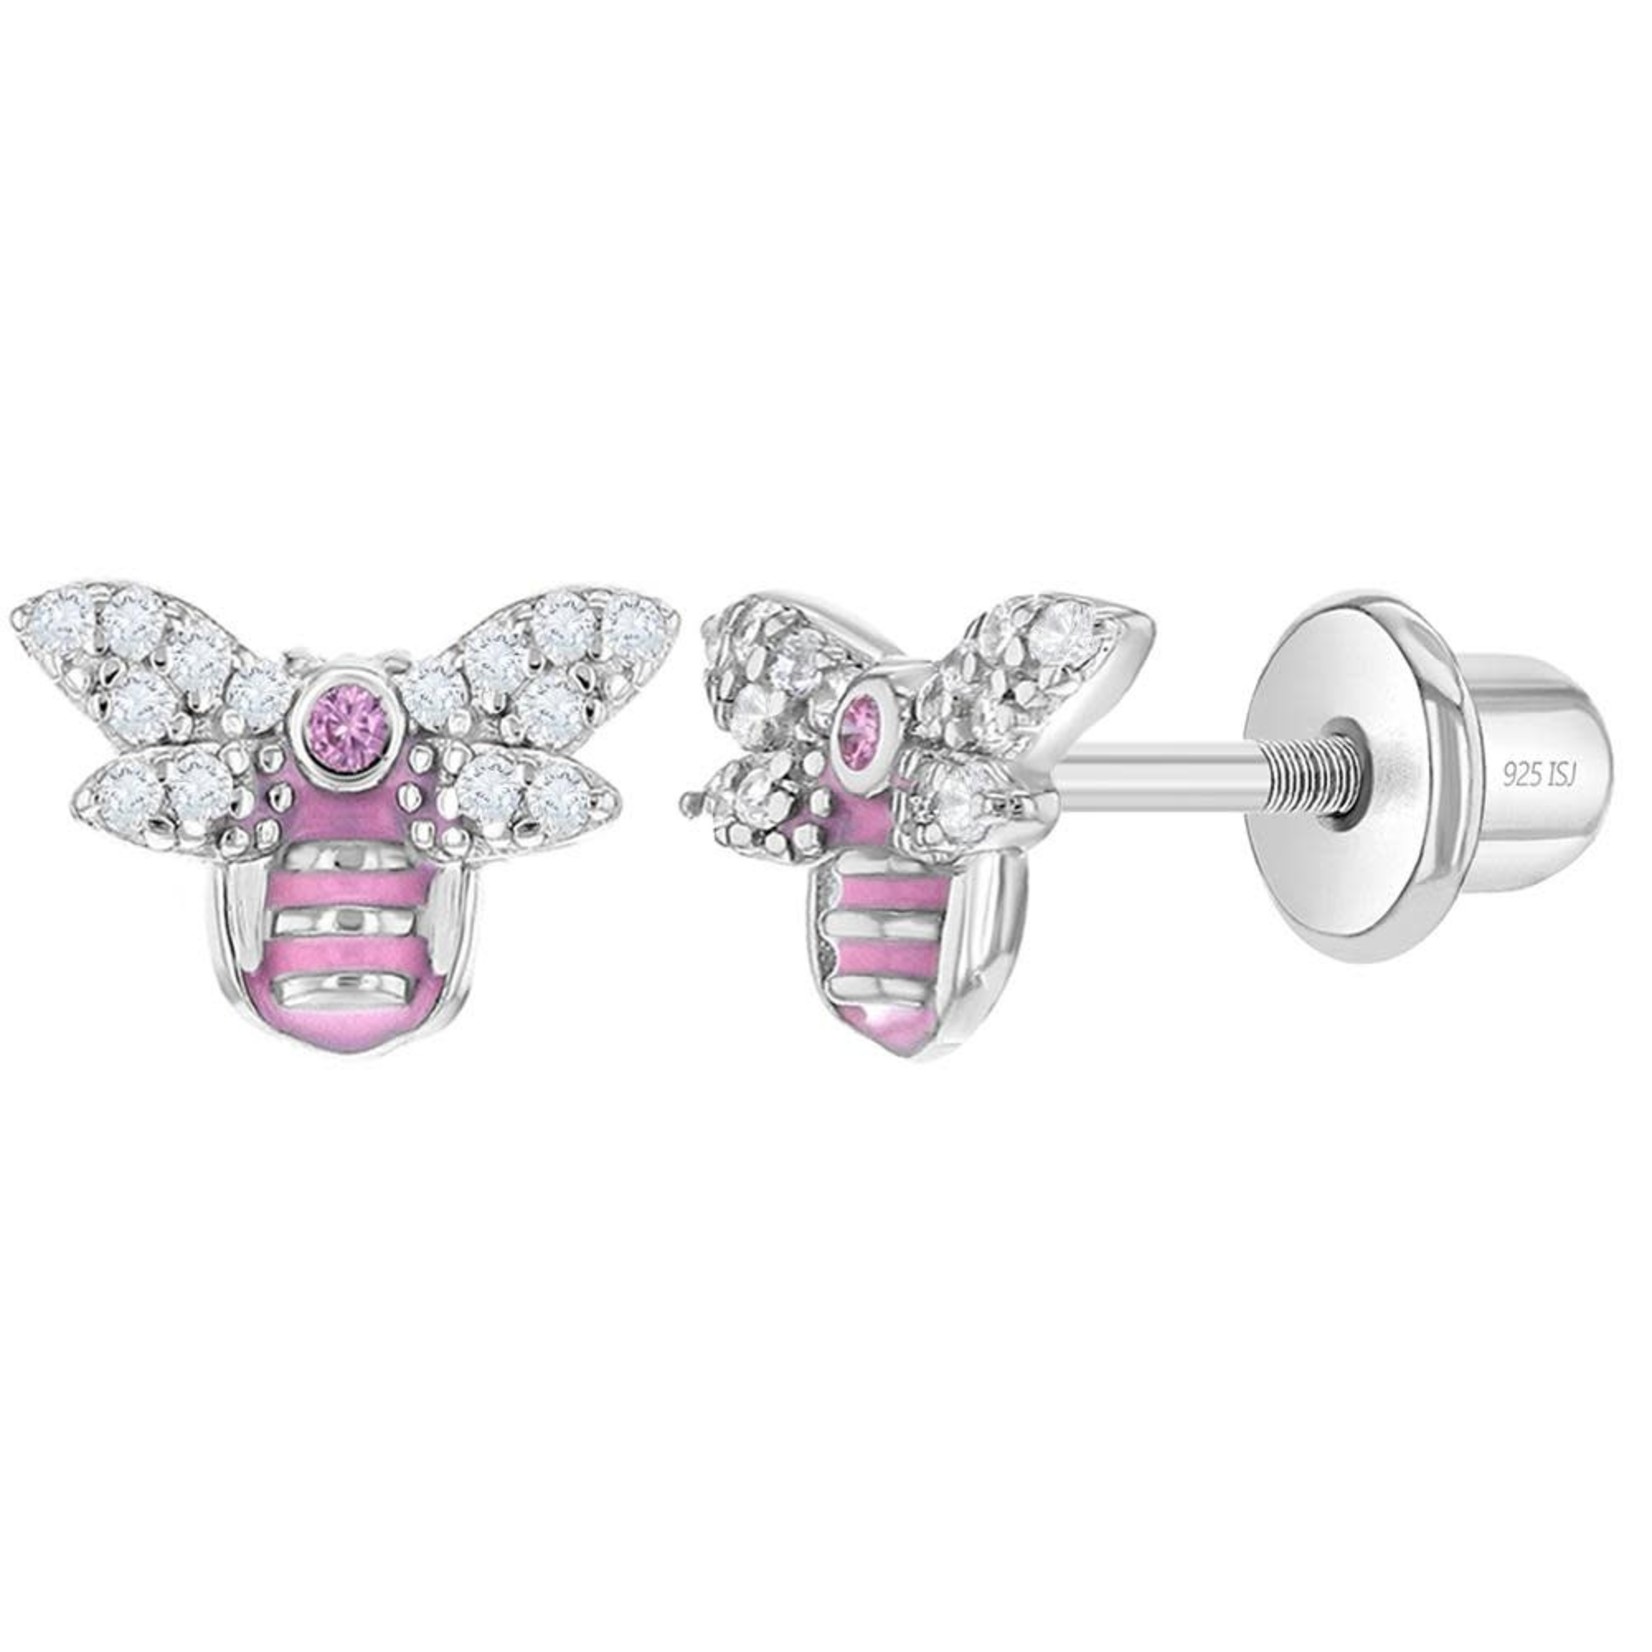 In Season Jewelry Cubic Zirconia & Enamel Bumblebee Earrings